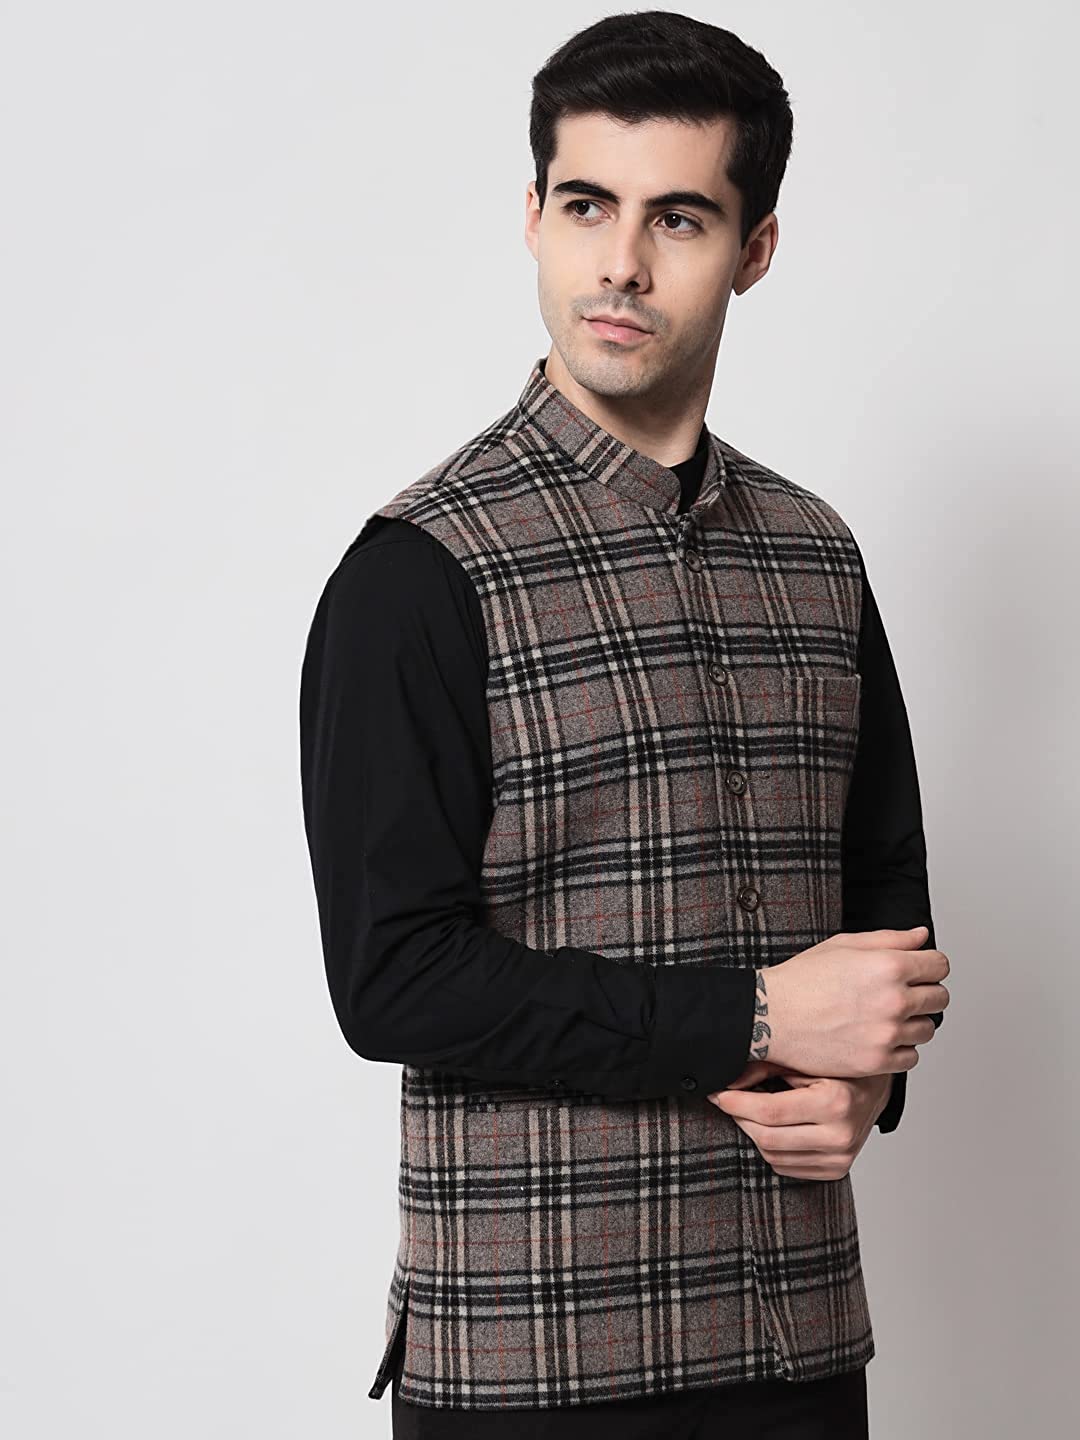 Vastraa Fusion Modi Jacket Waistcoat Checks Pattern Woolen Nehru Jacket